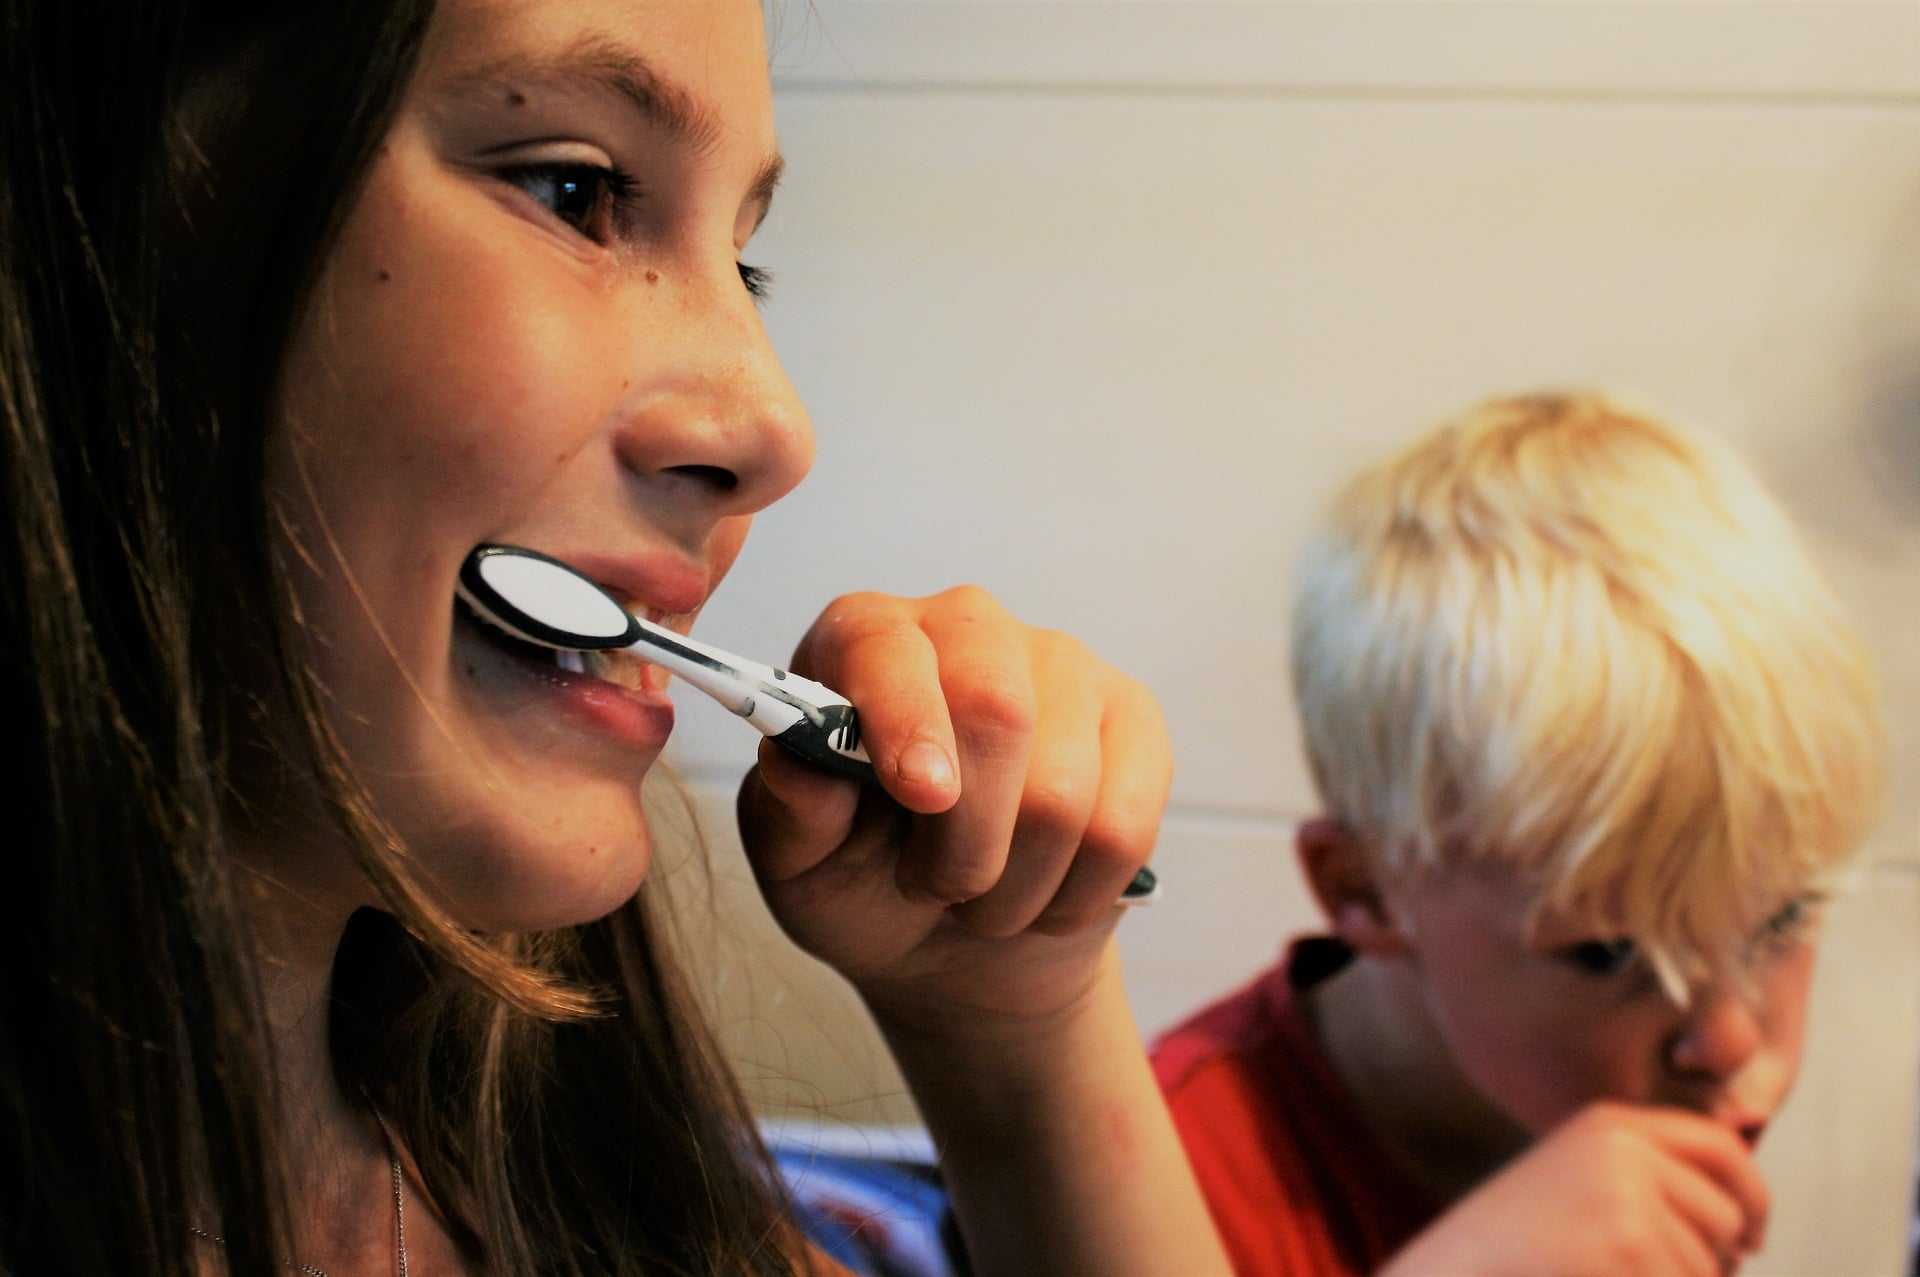 kids brushing teeth - how to make brushing teeth fun for kids